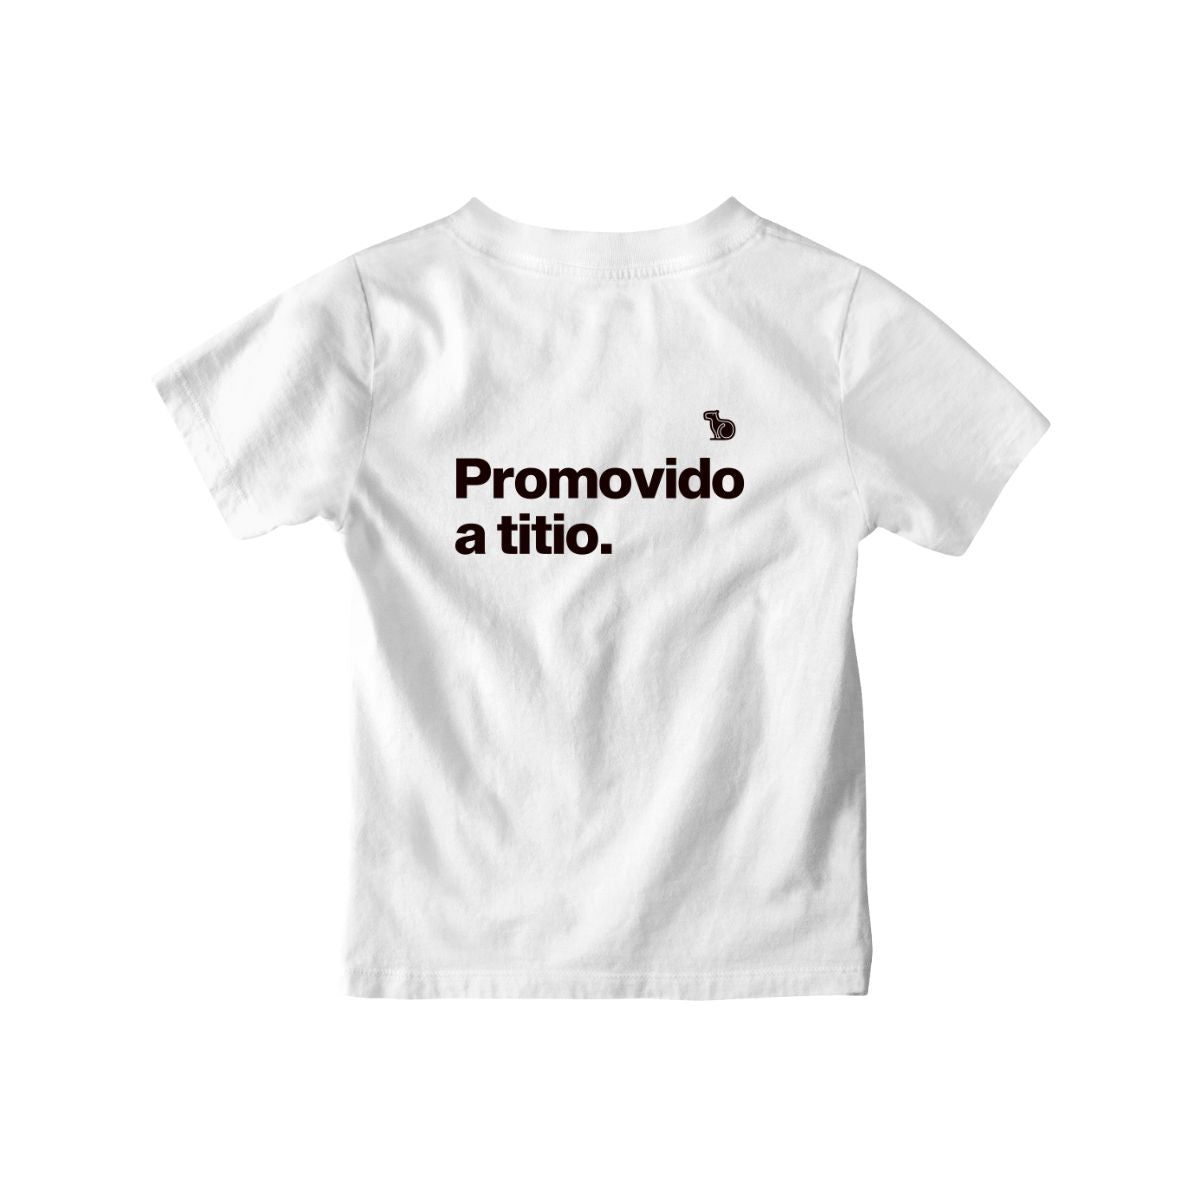 Camiseta infantil com a frase "Promovido a titio." na cor branca.